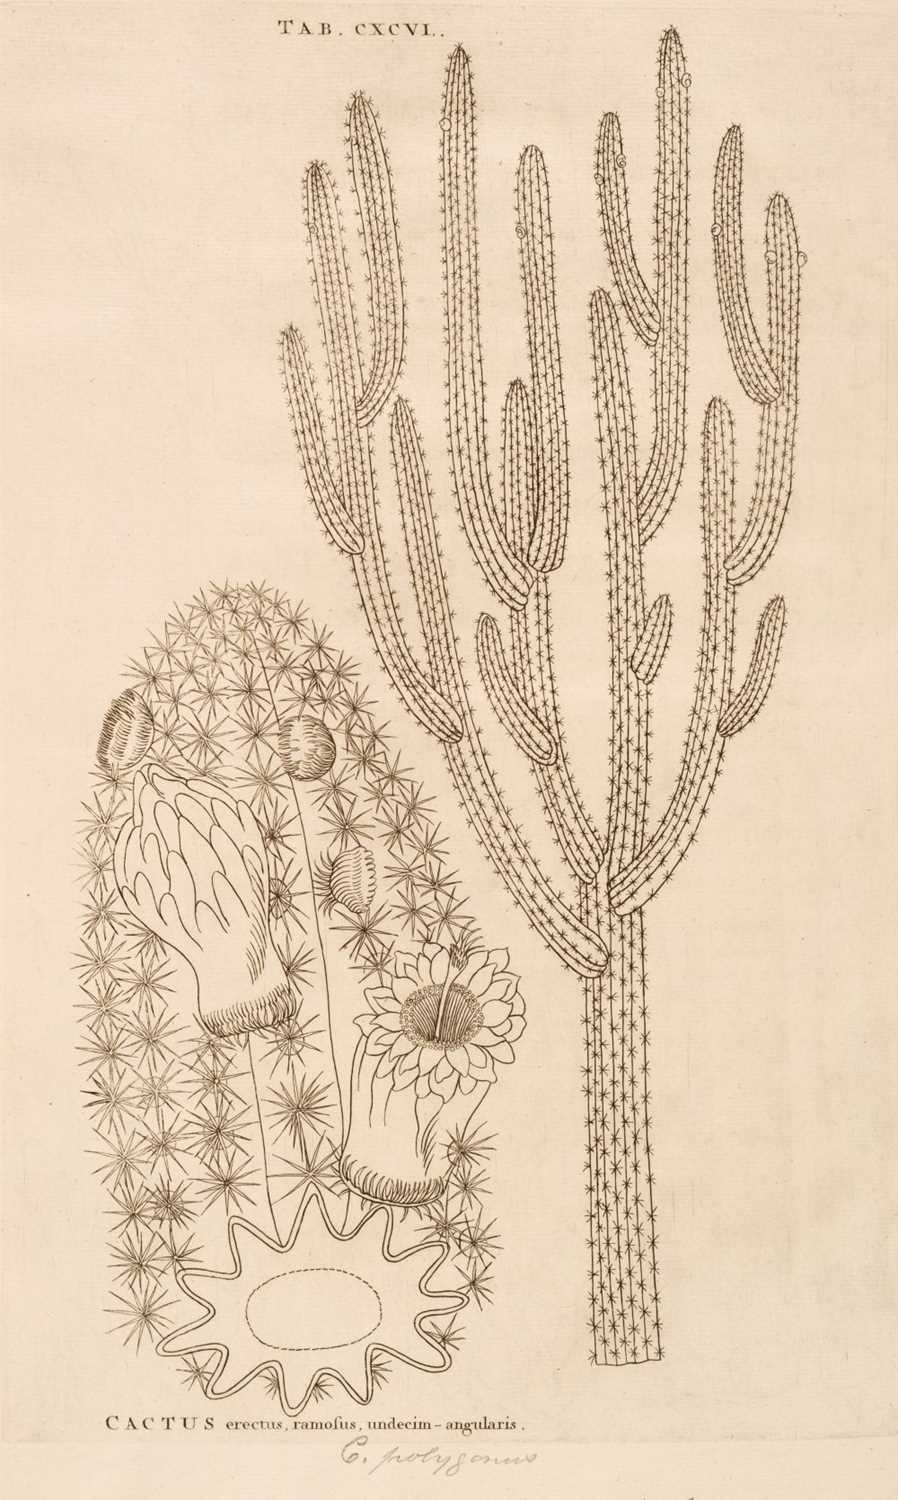 Lot 67 - Plumier (Charles). Plantarum Americanarum fasciculus primus [-Decimus], 10 parts in 2 vols., 1755-60